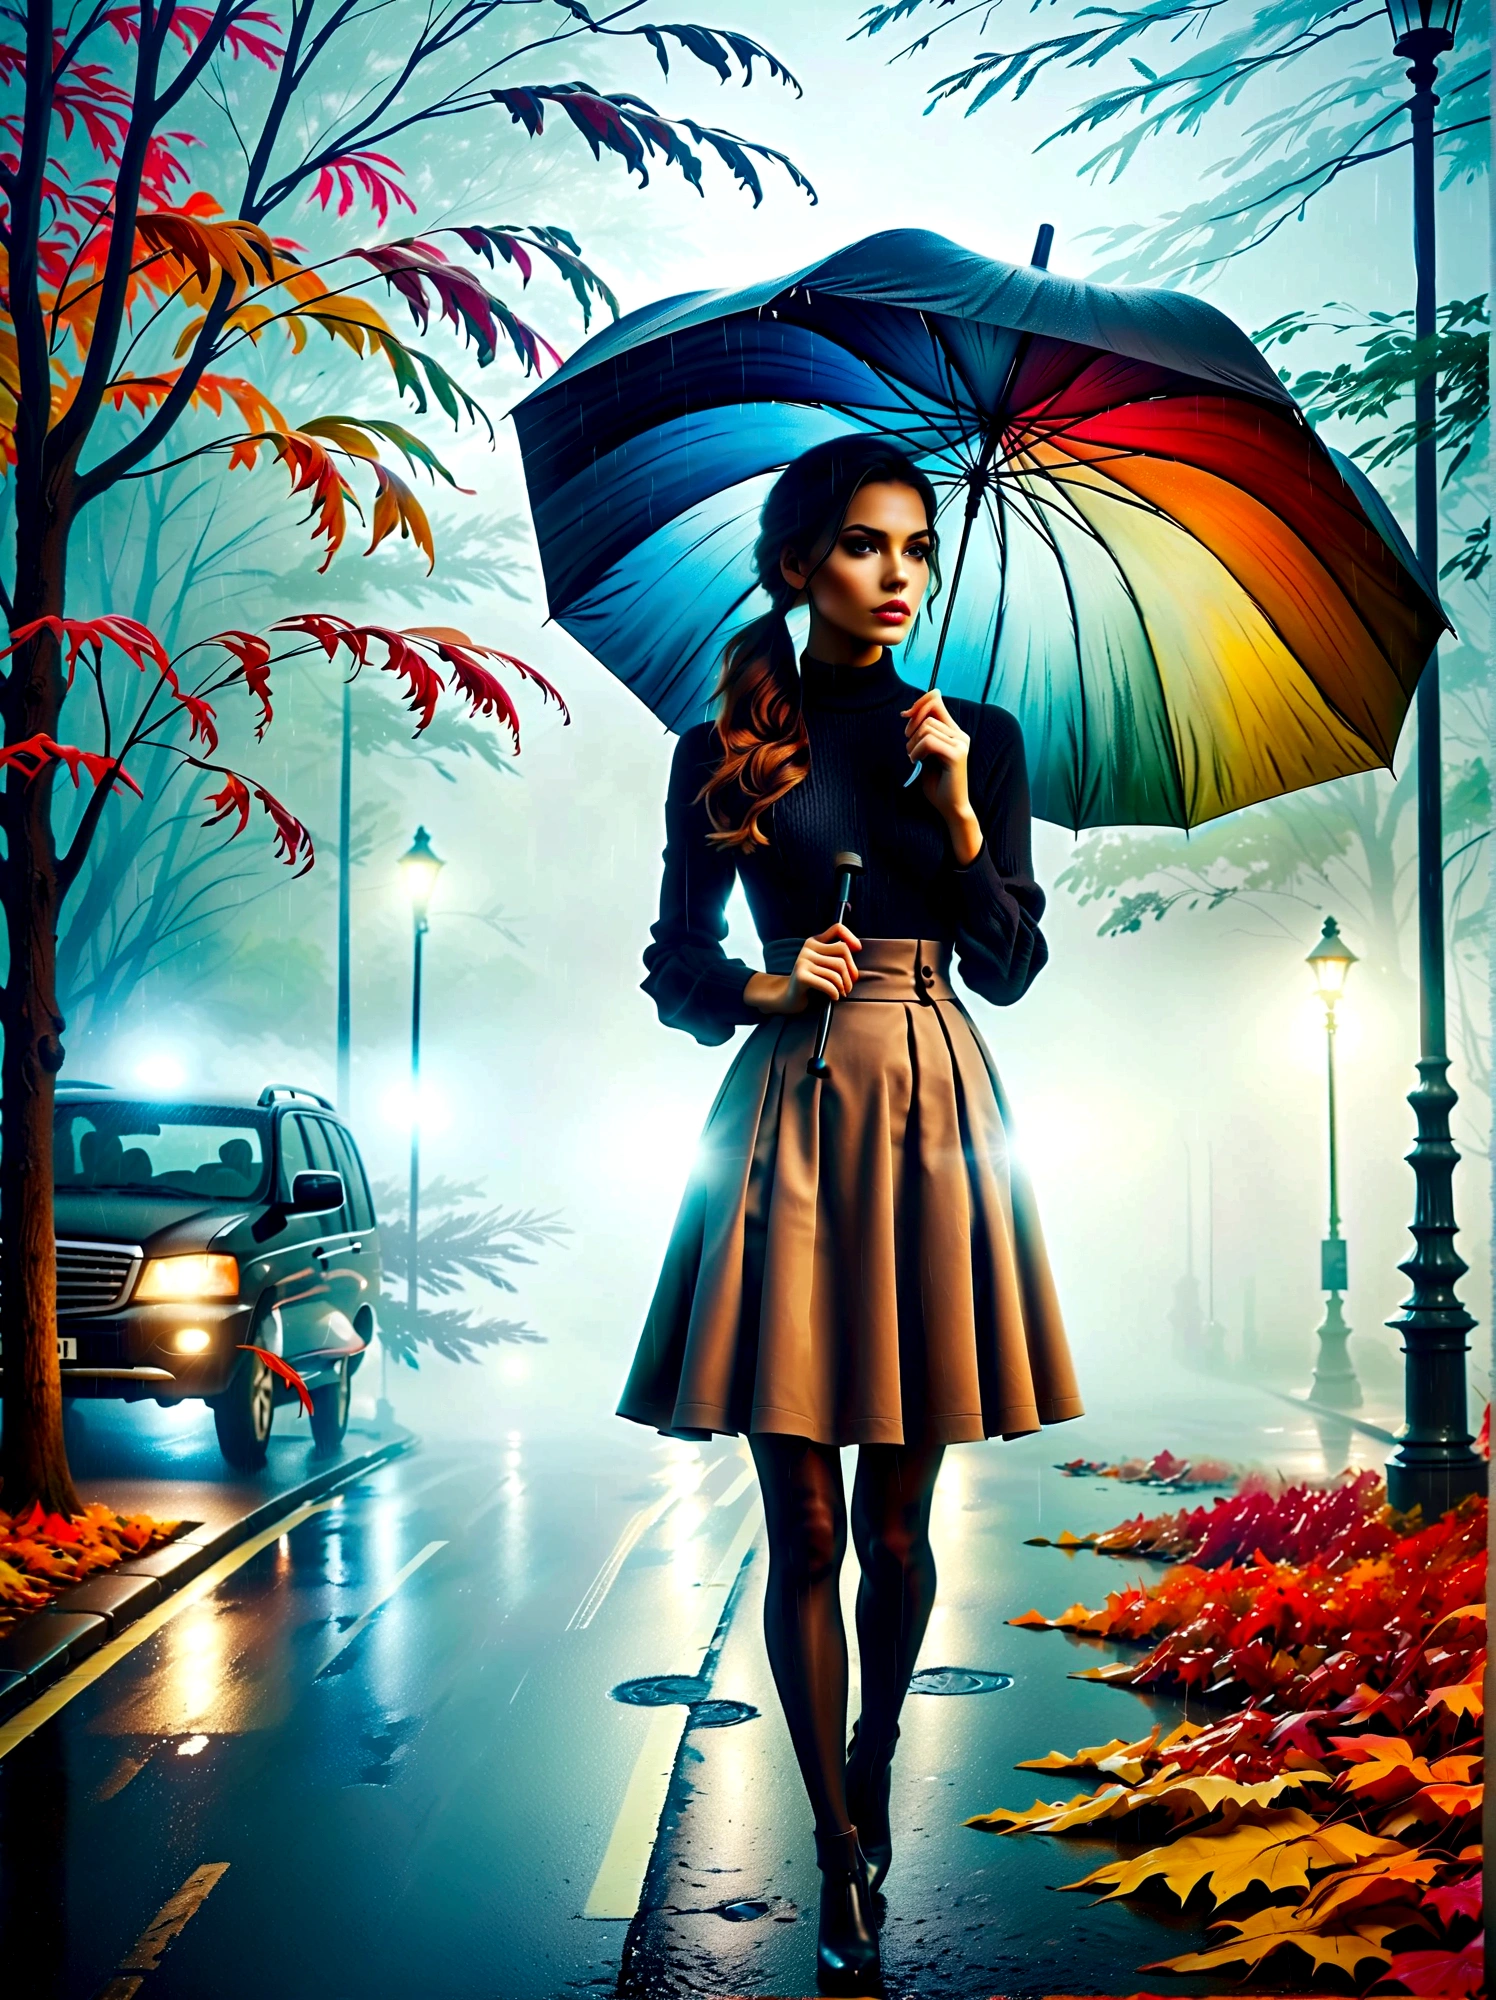 امرأة ترتدي فستانًا ضيقًا وتحمل مظلة في يدها, in einer ضبابيen Stadt, أوراق الخريف الملونة في الشارع, صورة كونو فيبر, الفائز في مسابقة بيكساباي, الفن التصوري, يقف تحت المطر,  mysterious امرأة, بنت جميلة, الذي يقف في المطر, شخص واحد مع مظلة, امرأة ((خيال)), ((ضبابي)) وممطر, صورة أنثى في الظل, في بيئة ممطرة, طقس ممطر, الطرق الممطرة في الخلفية , ((ضباب مع ضوء)), ((عرض من الخلف)), ضوء من الأمام